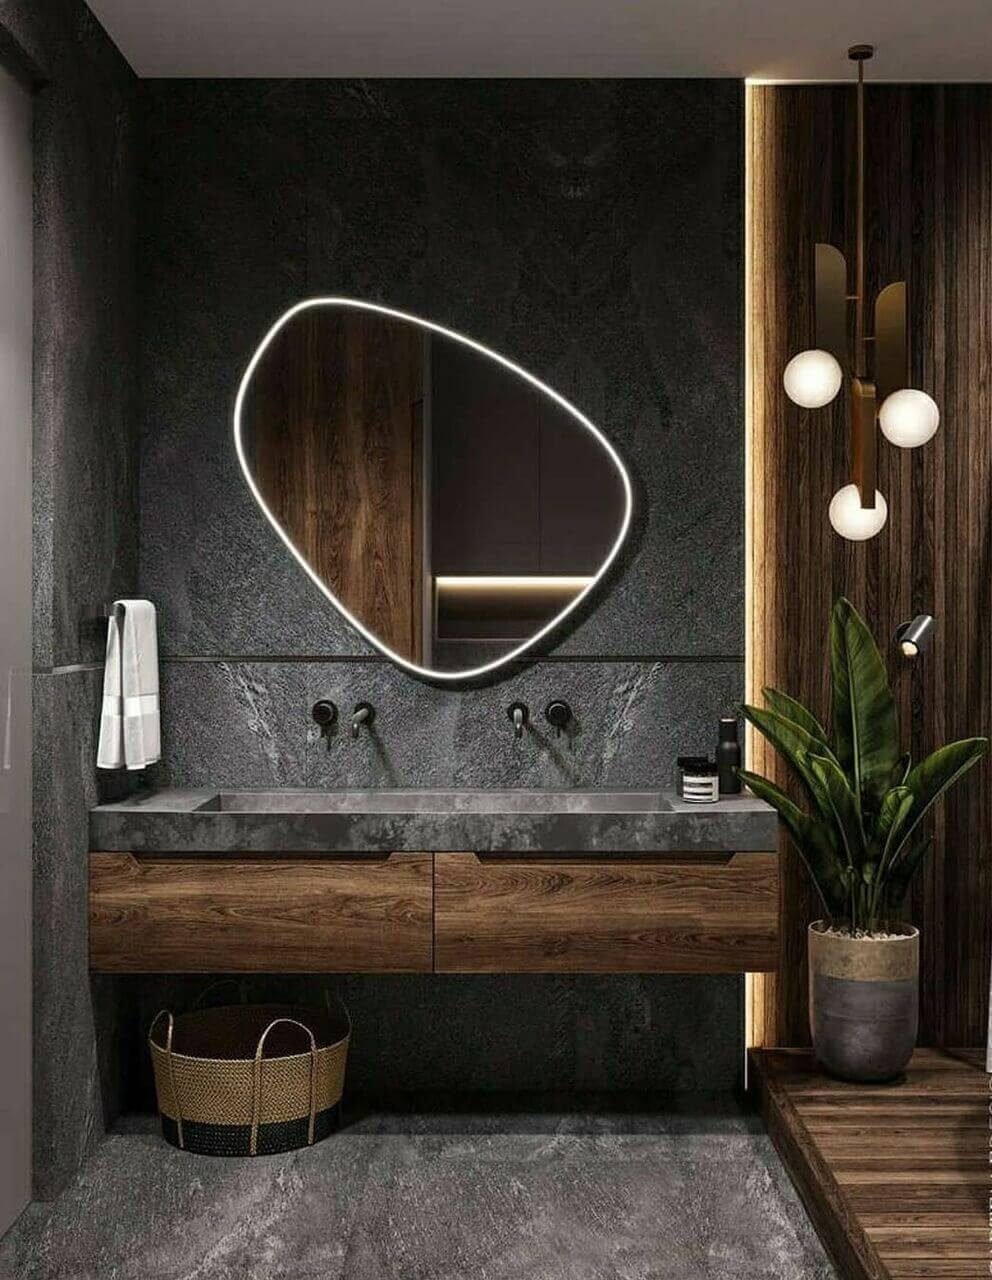 An Asymmetrical Mirror Design